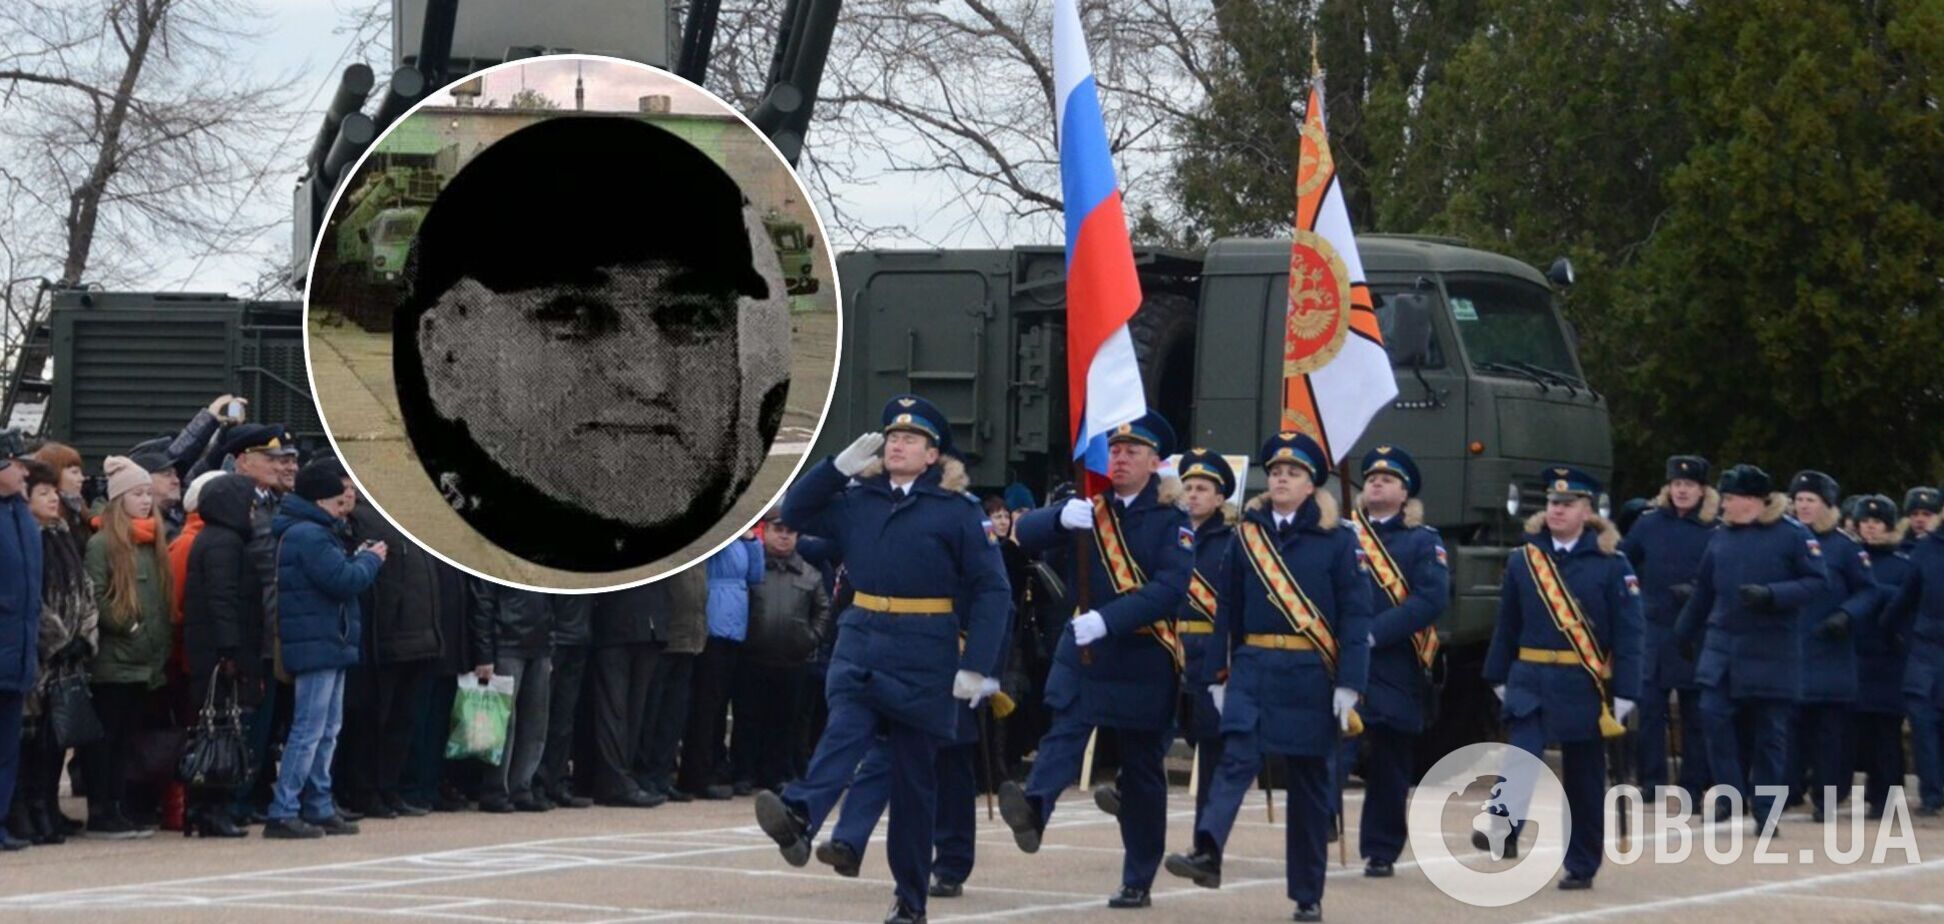 Подполковник из РФ, дочери которого живут в Днепре, отправил солдат убивать украинцев